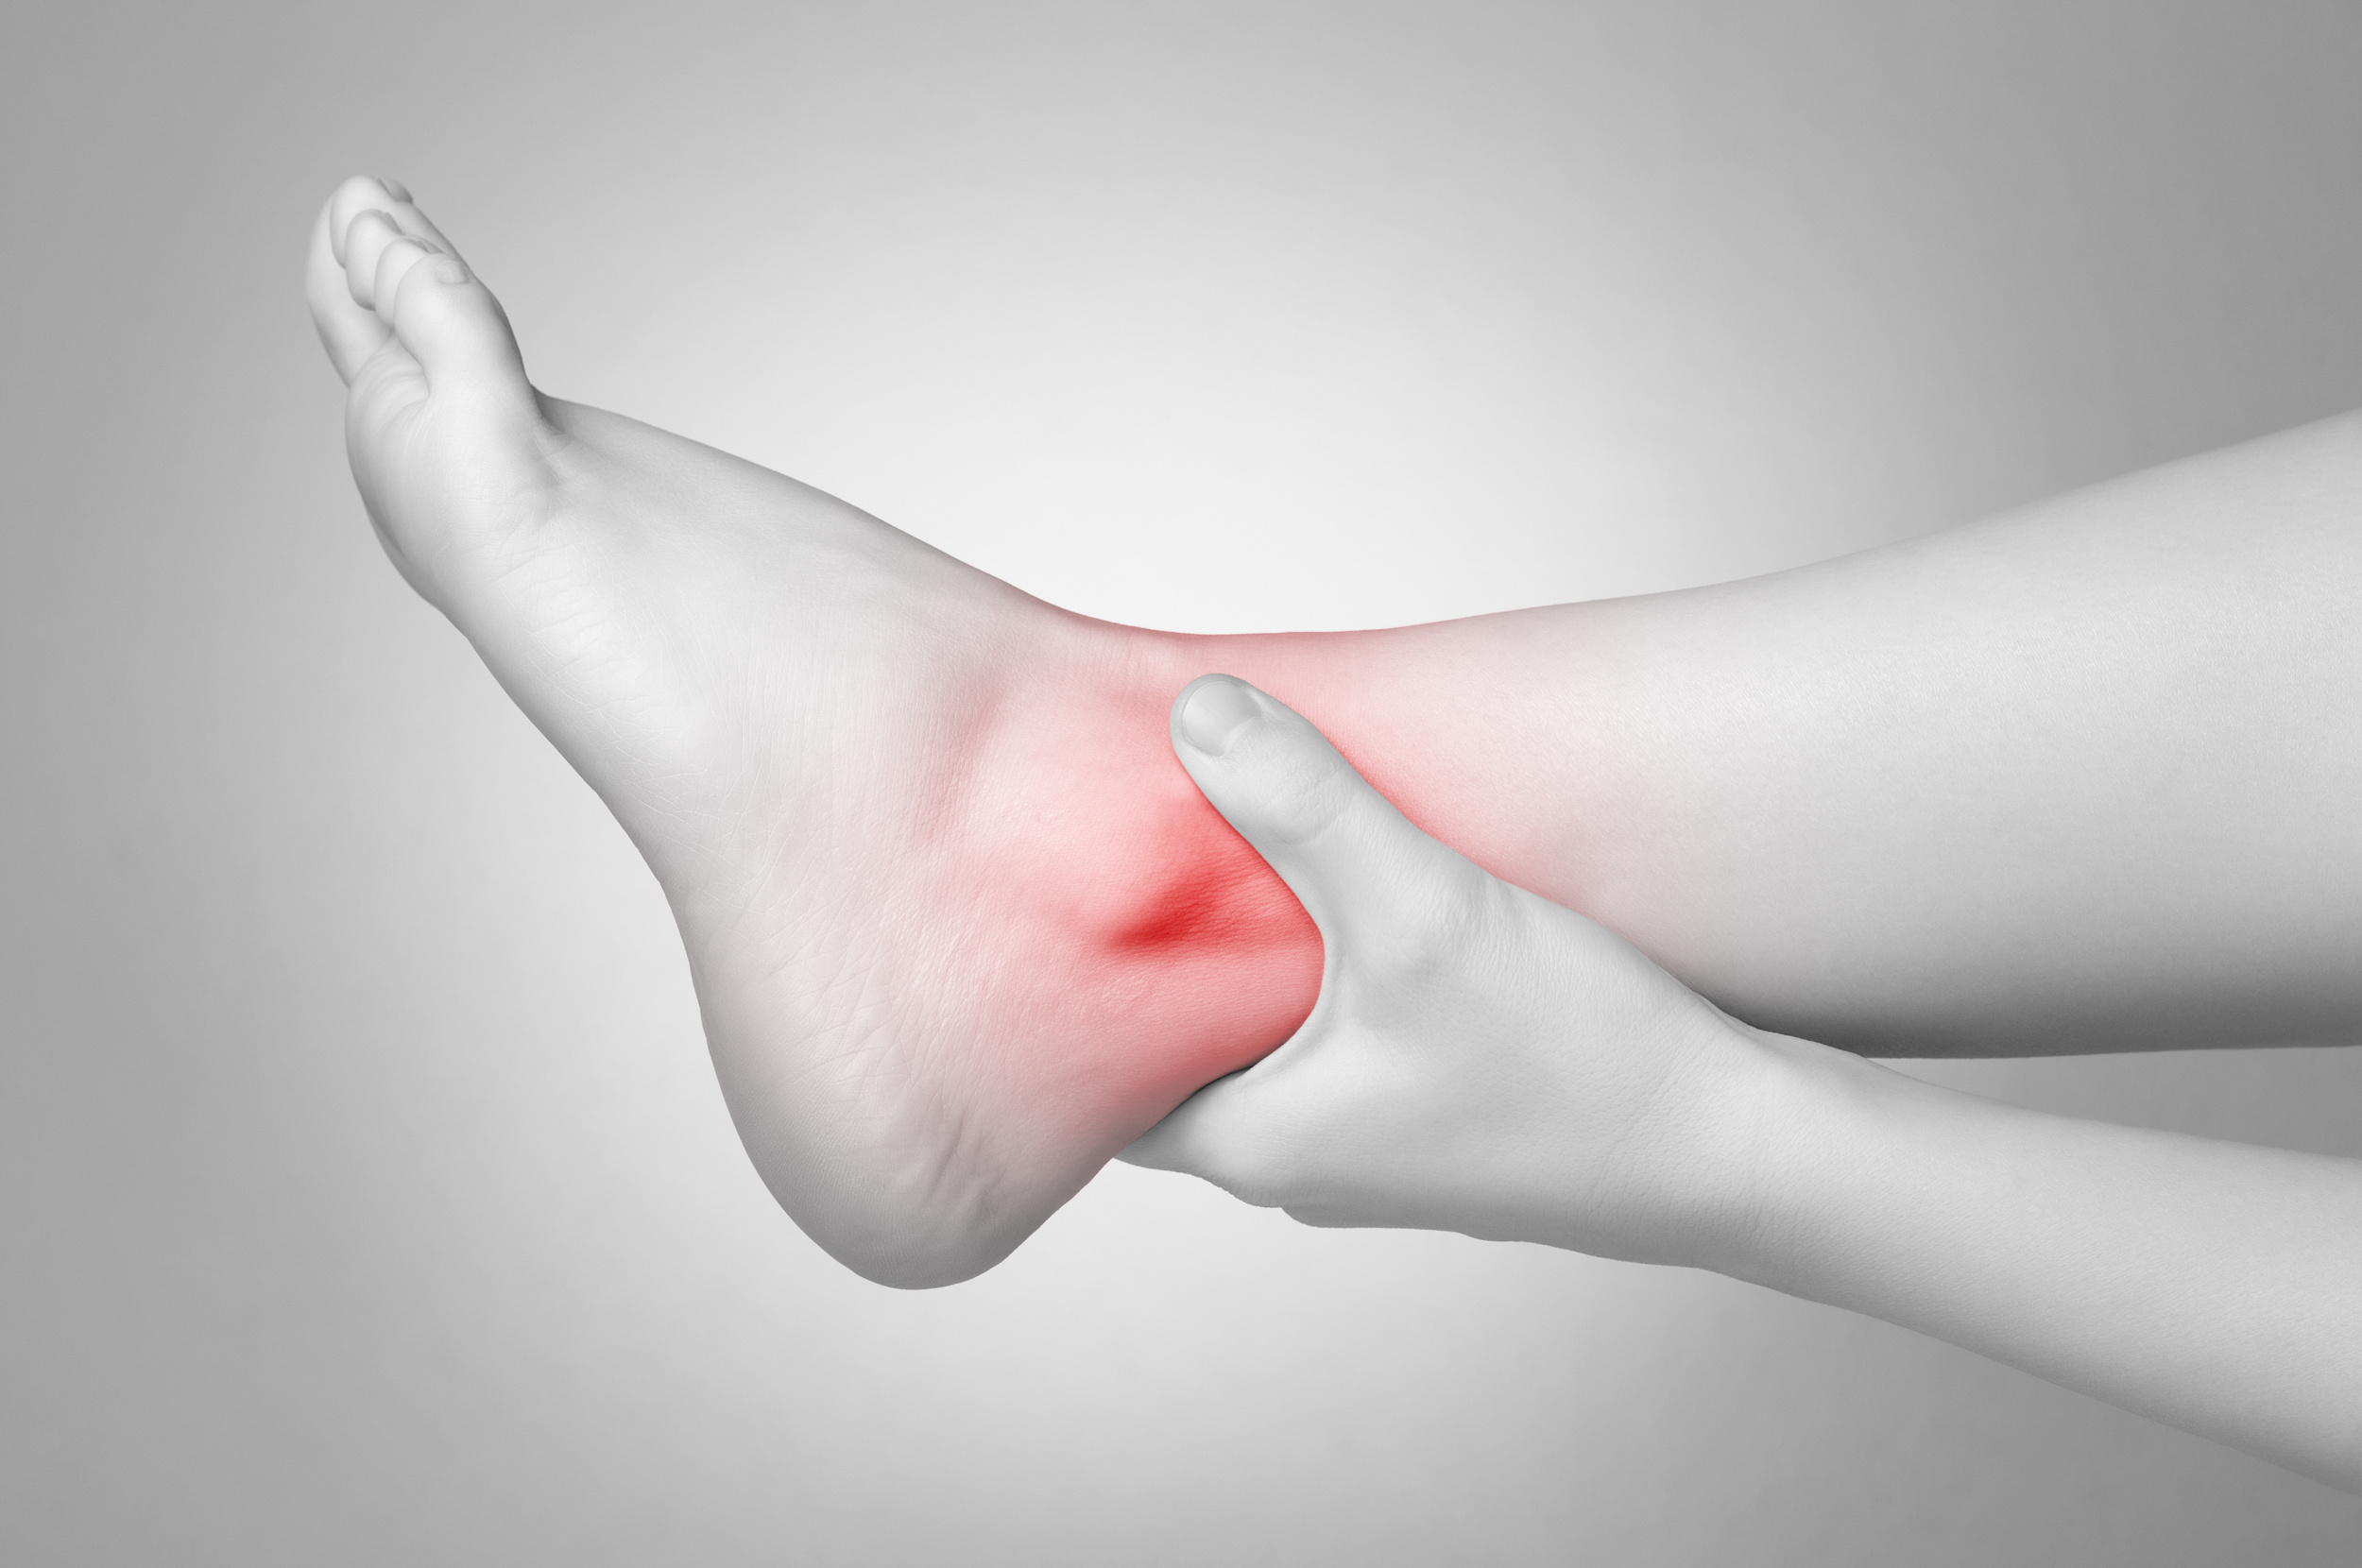 Thoái hóa khớp là nguyên nhân gây ra tình trạng bàn chân đau nhức